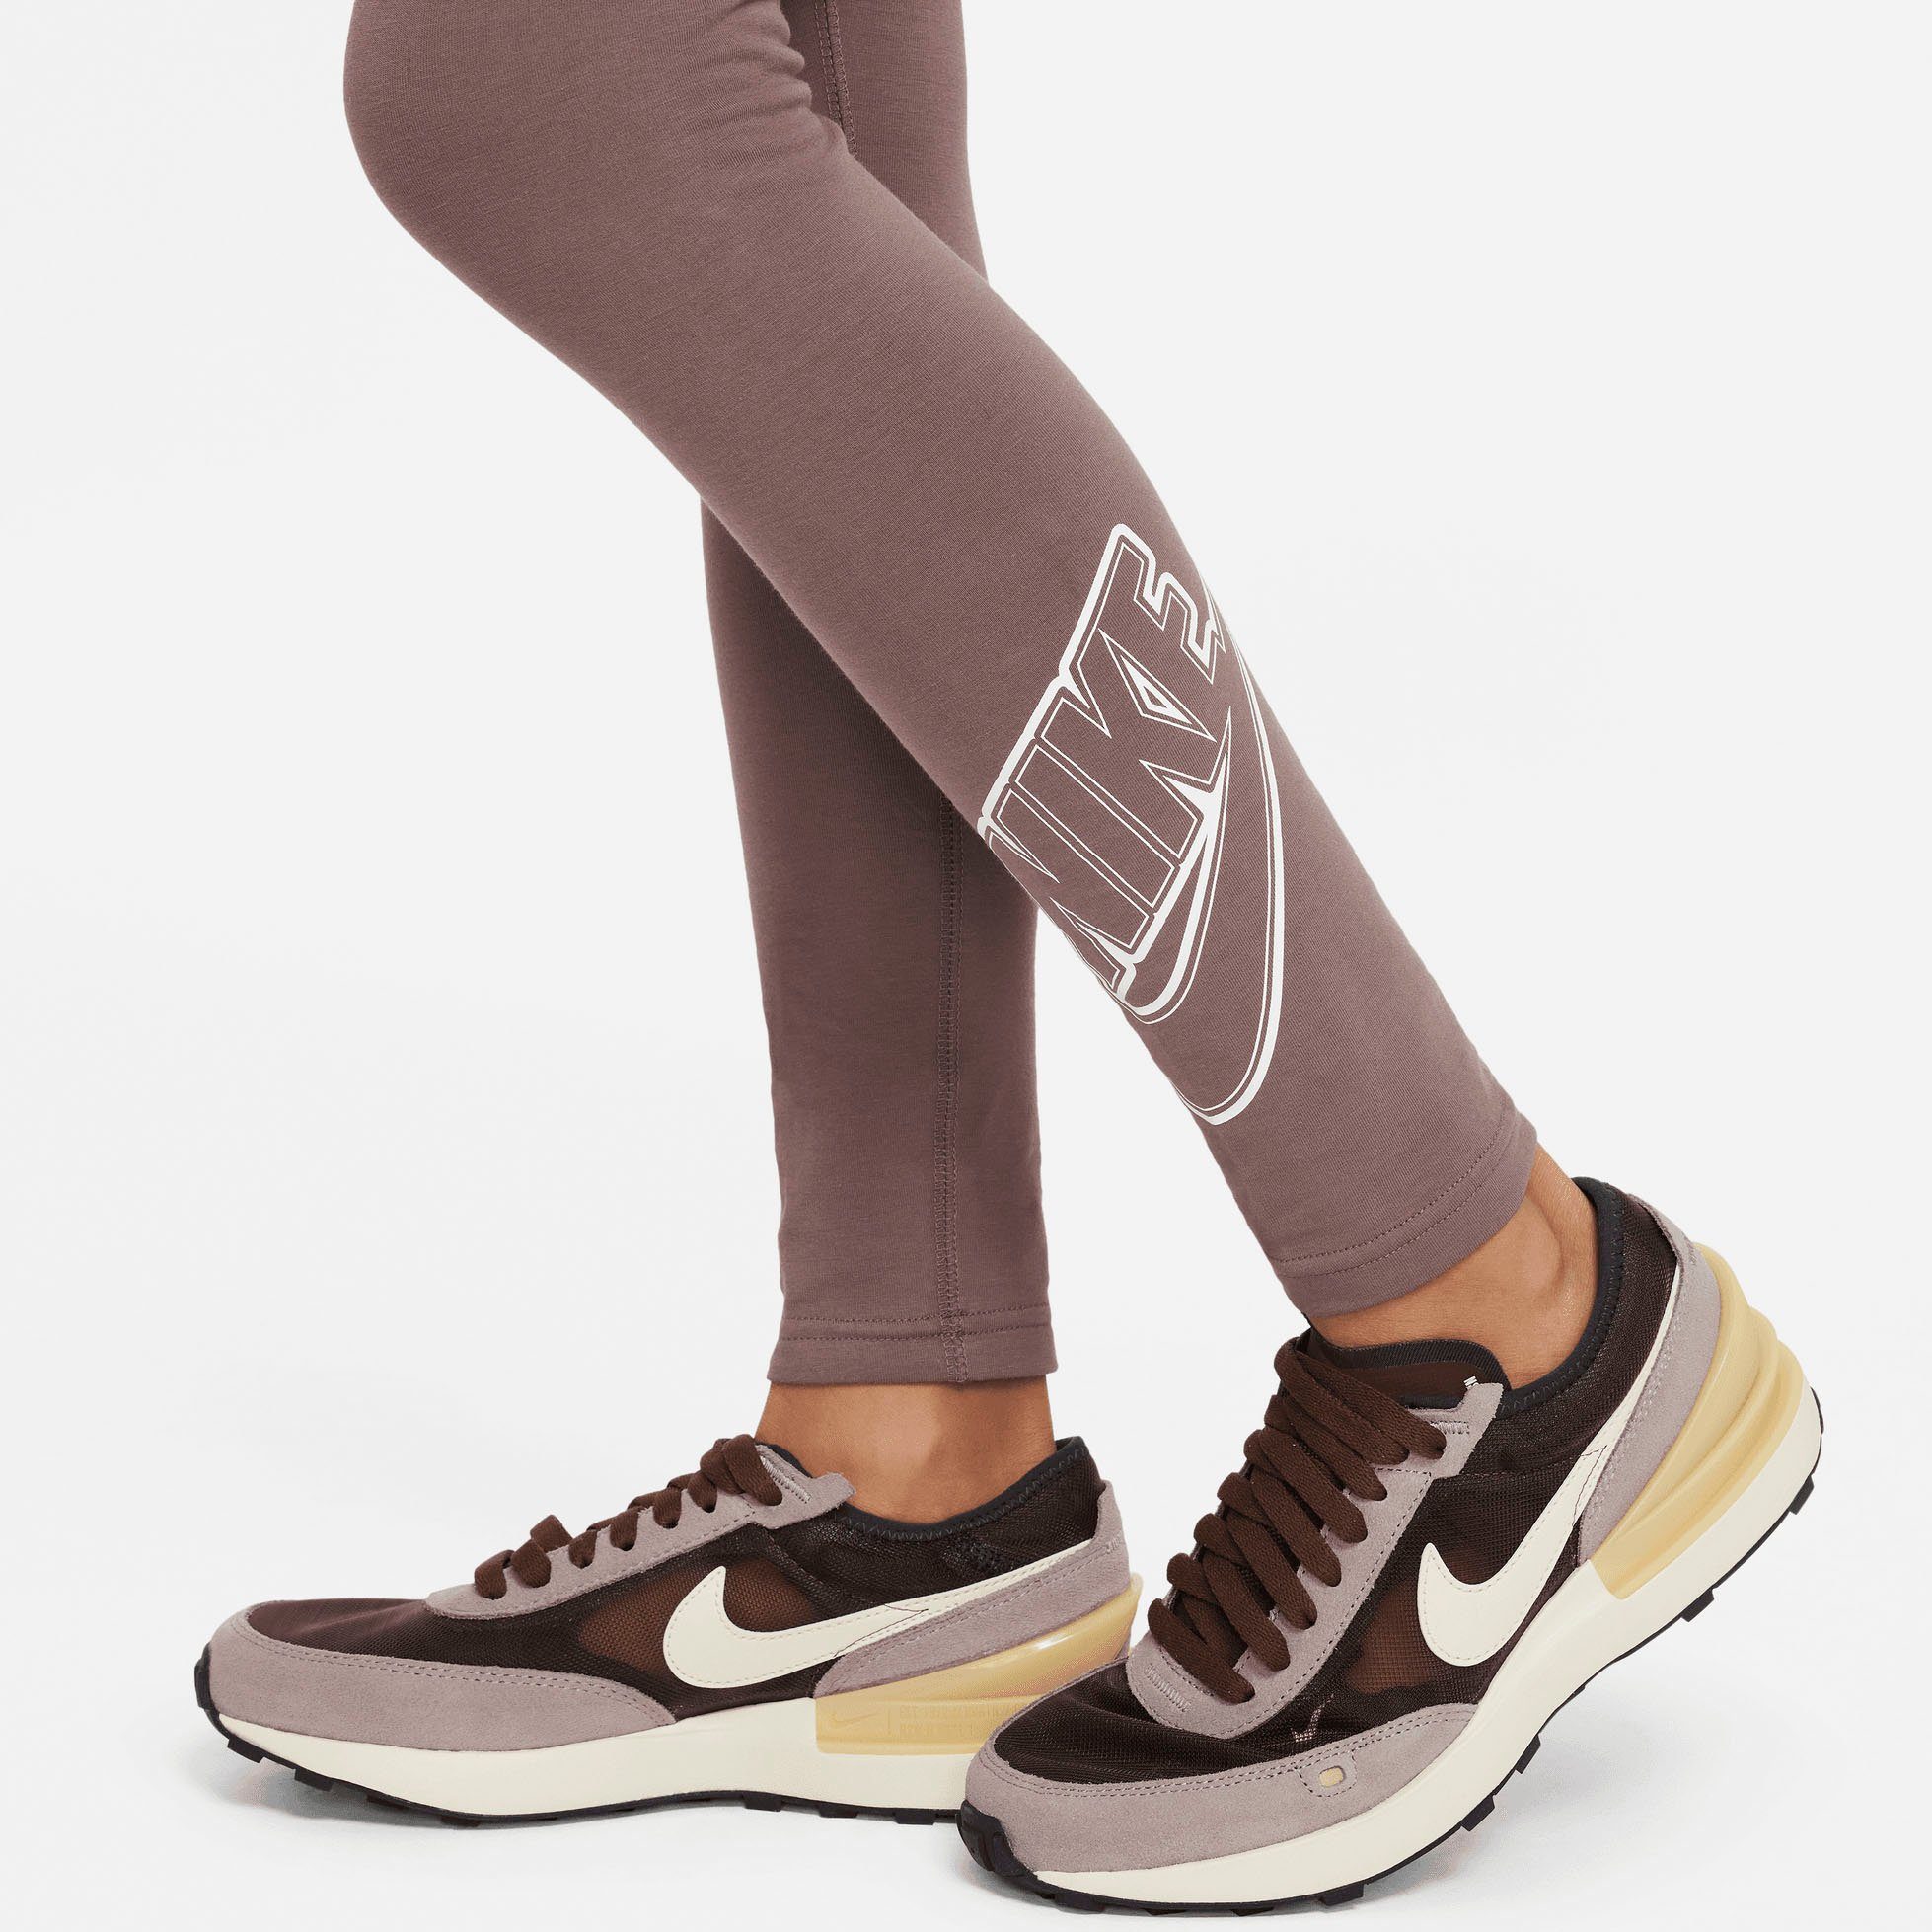 (Girls) Nike Kids' Sportswear Graphic PLUM Leggings ECLIPSE/WHITE Favorites Leggings Big